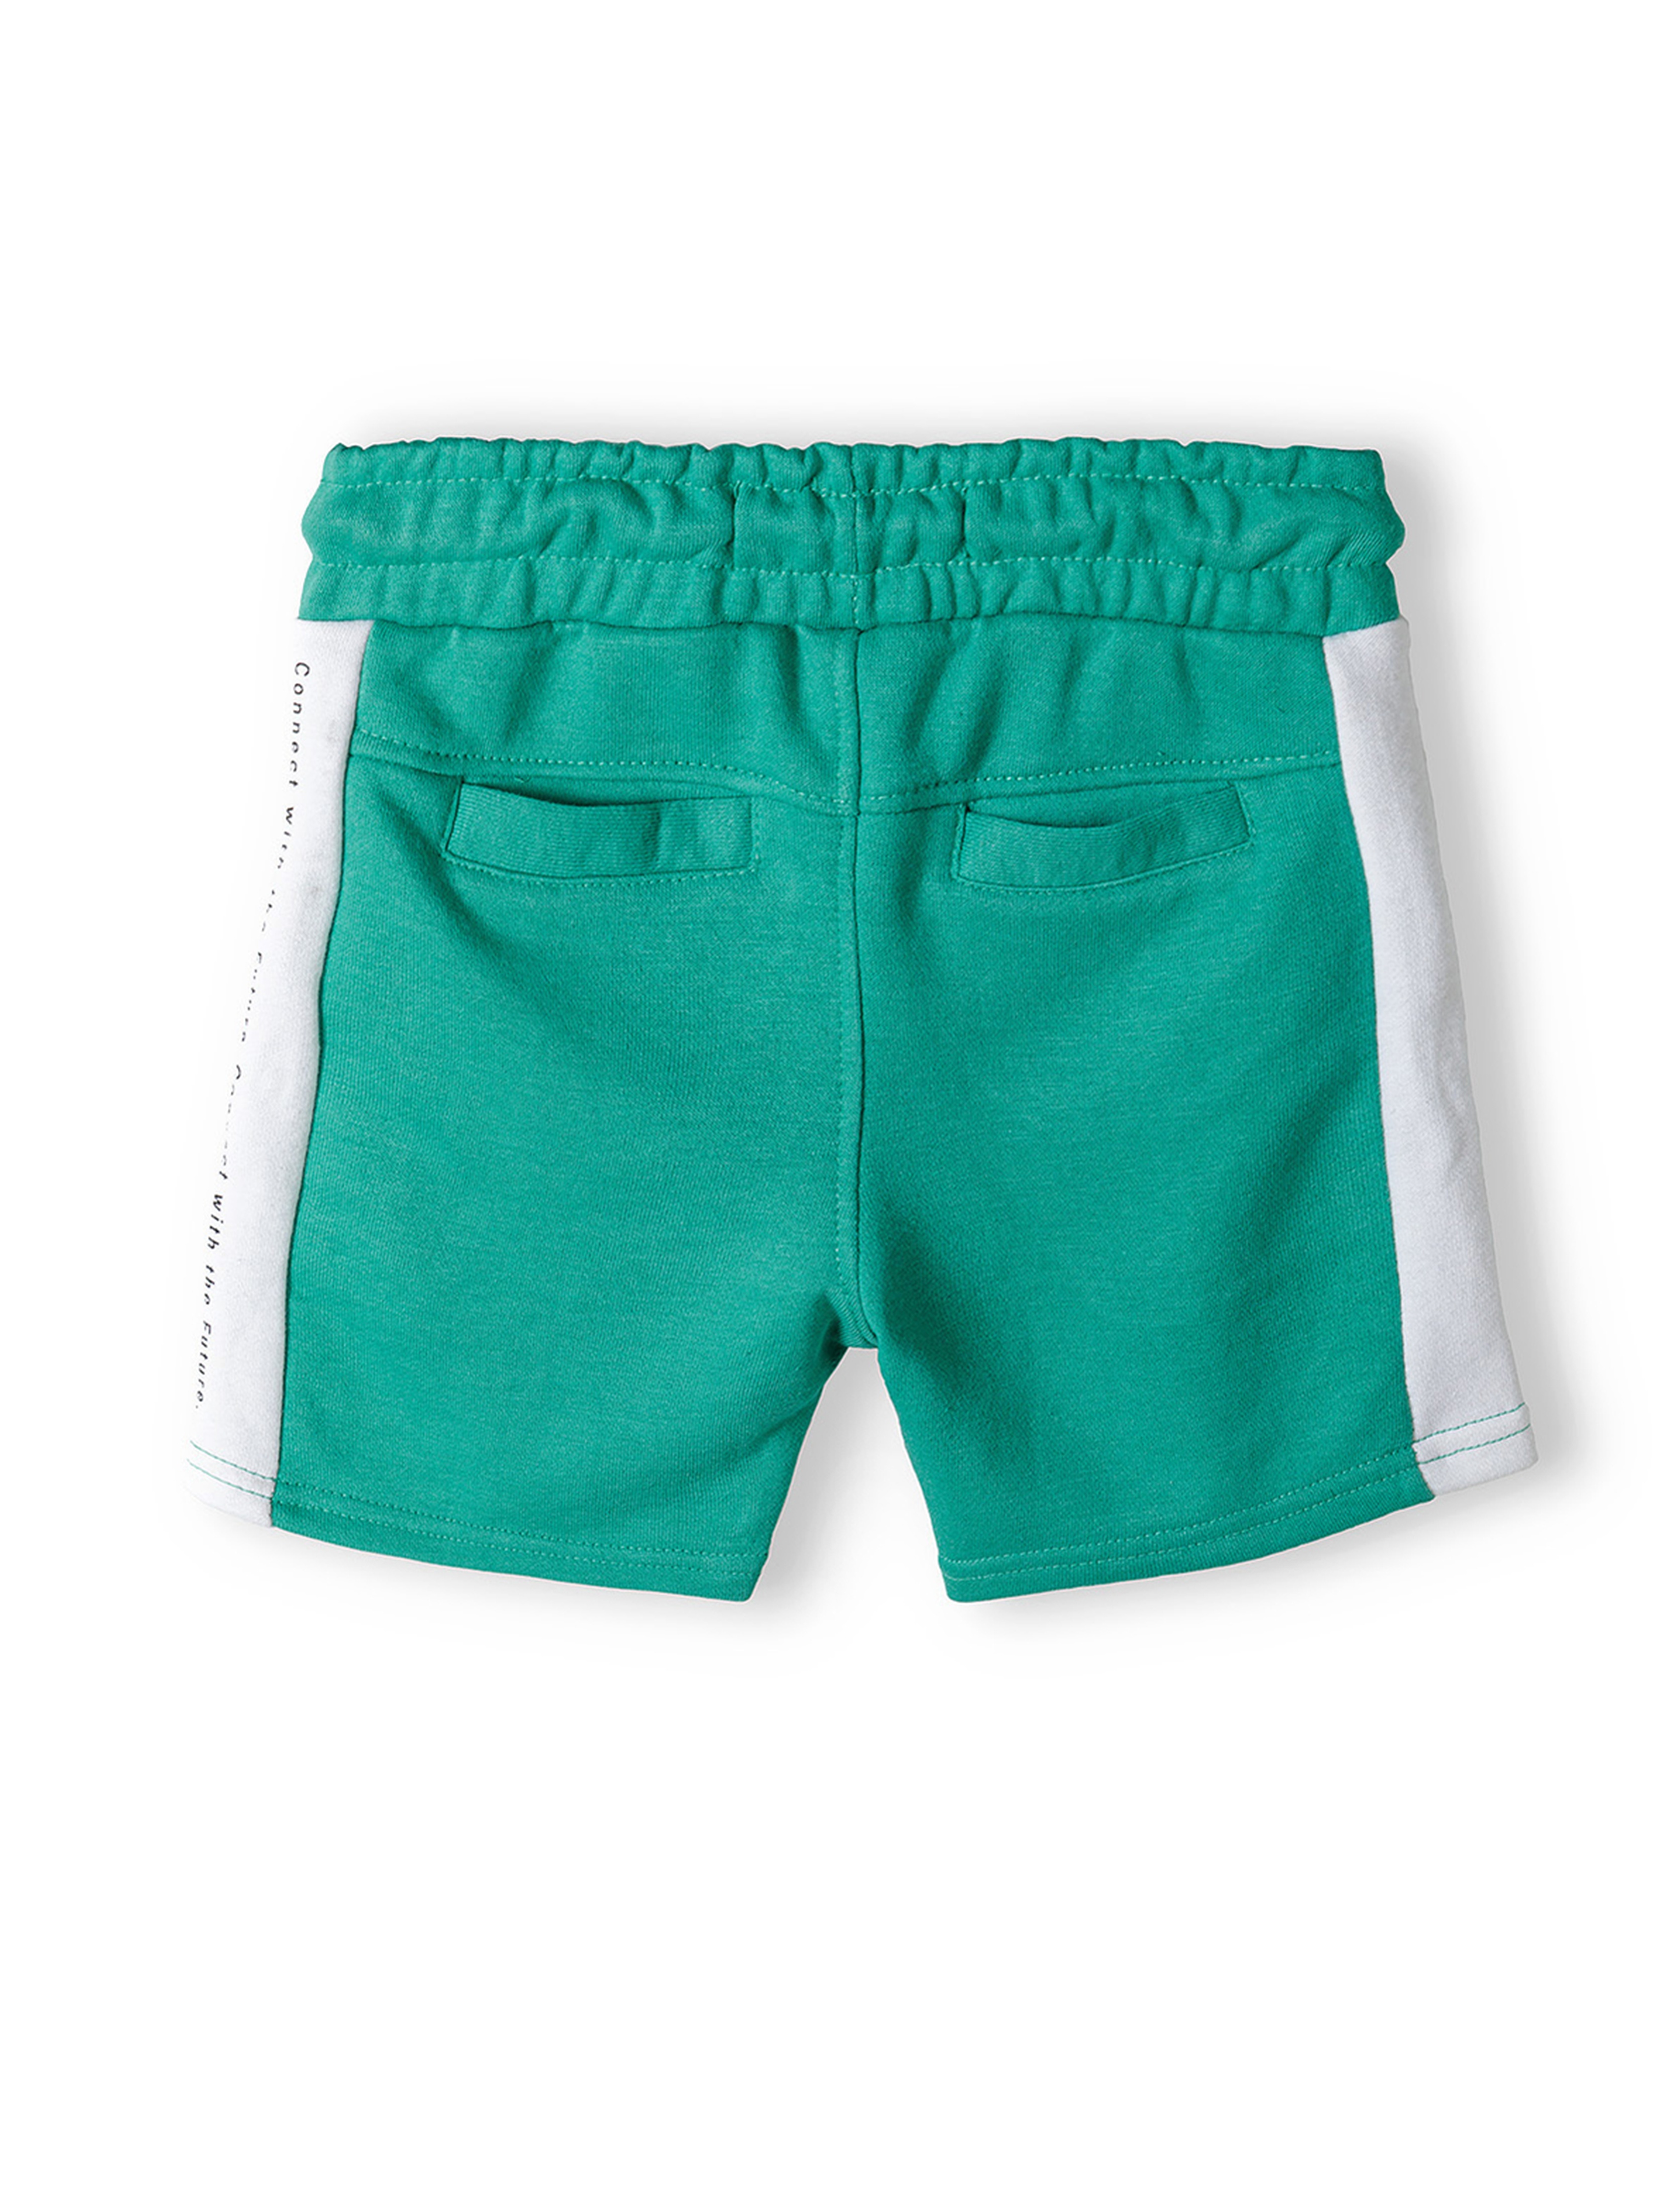 Zielone krótkie spodenki dresowe dla chłopca